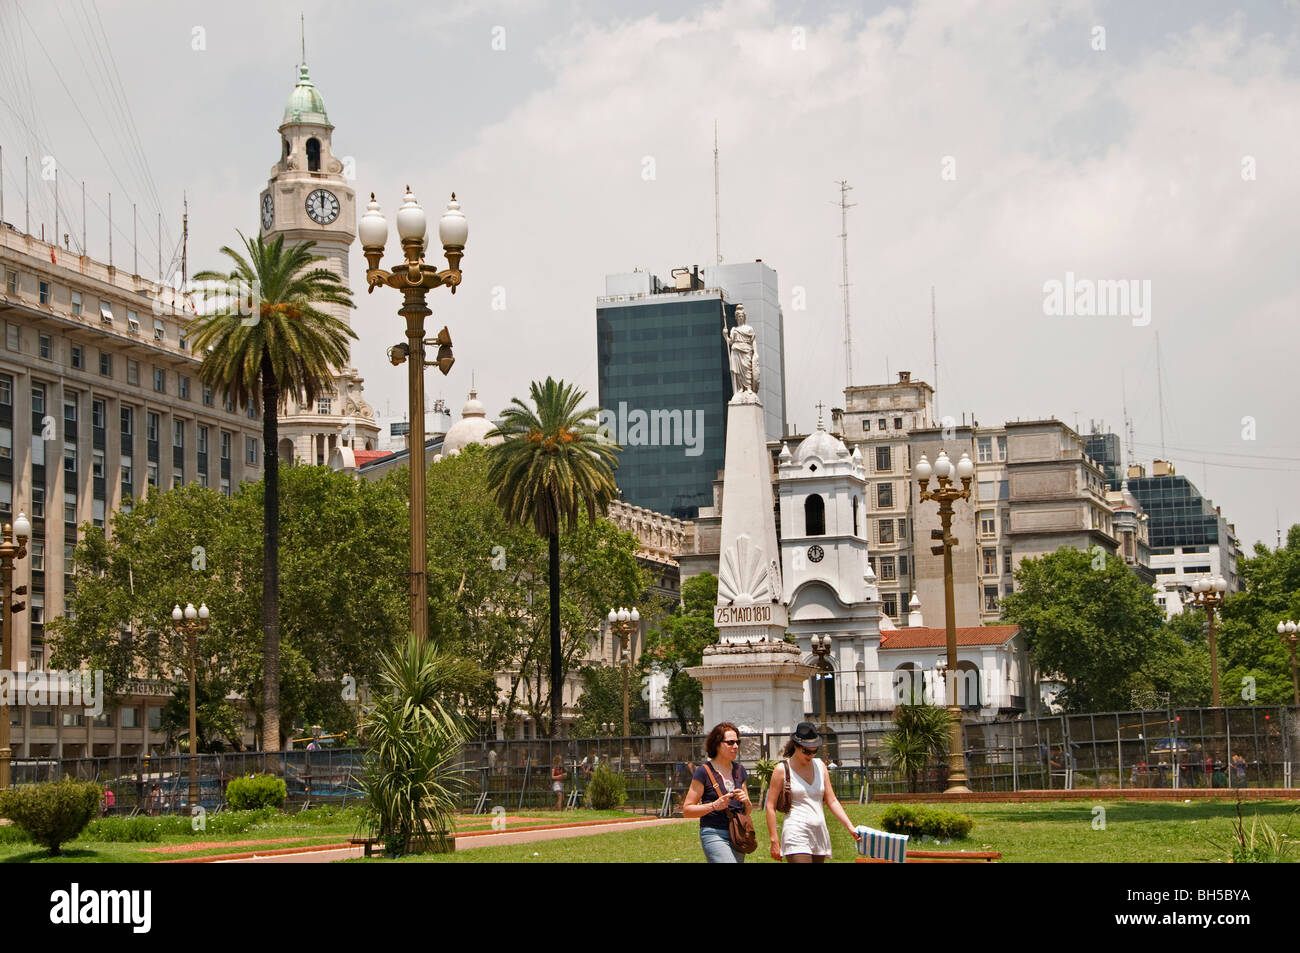 Pyramide de la ville de Buenos Aires Plaza de Mayo Cabildo Banque D'Images